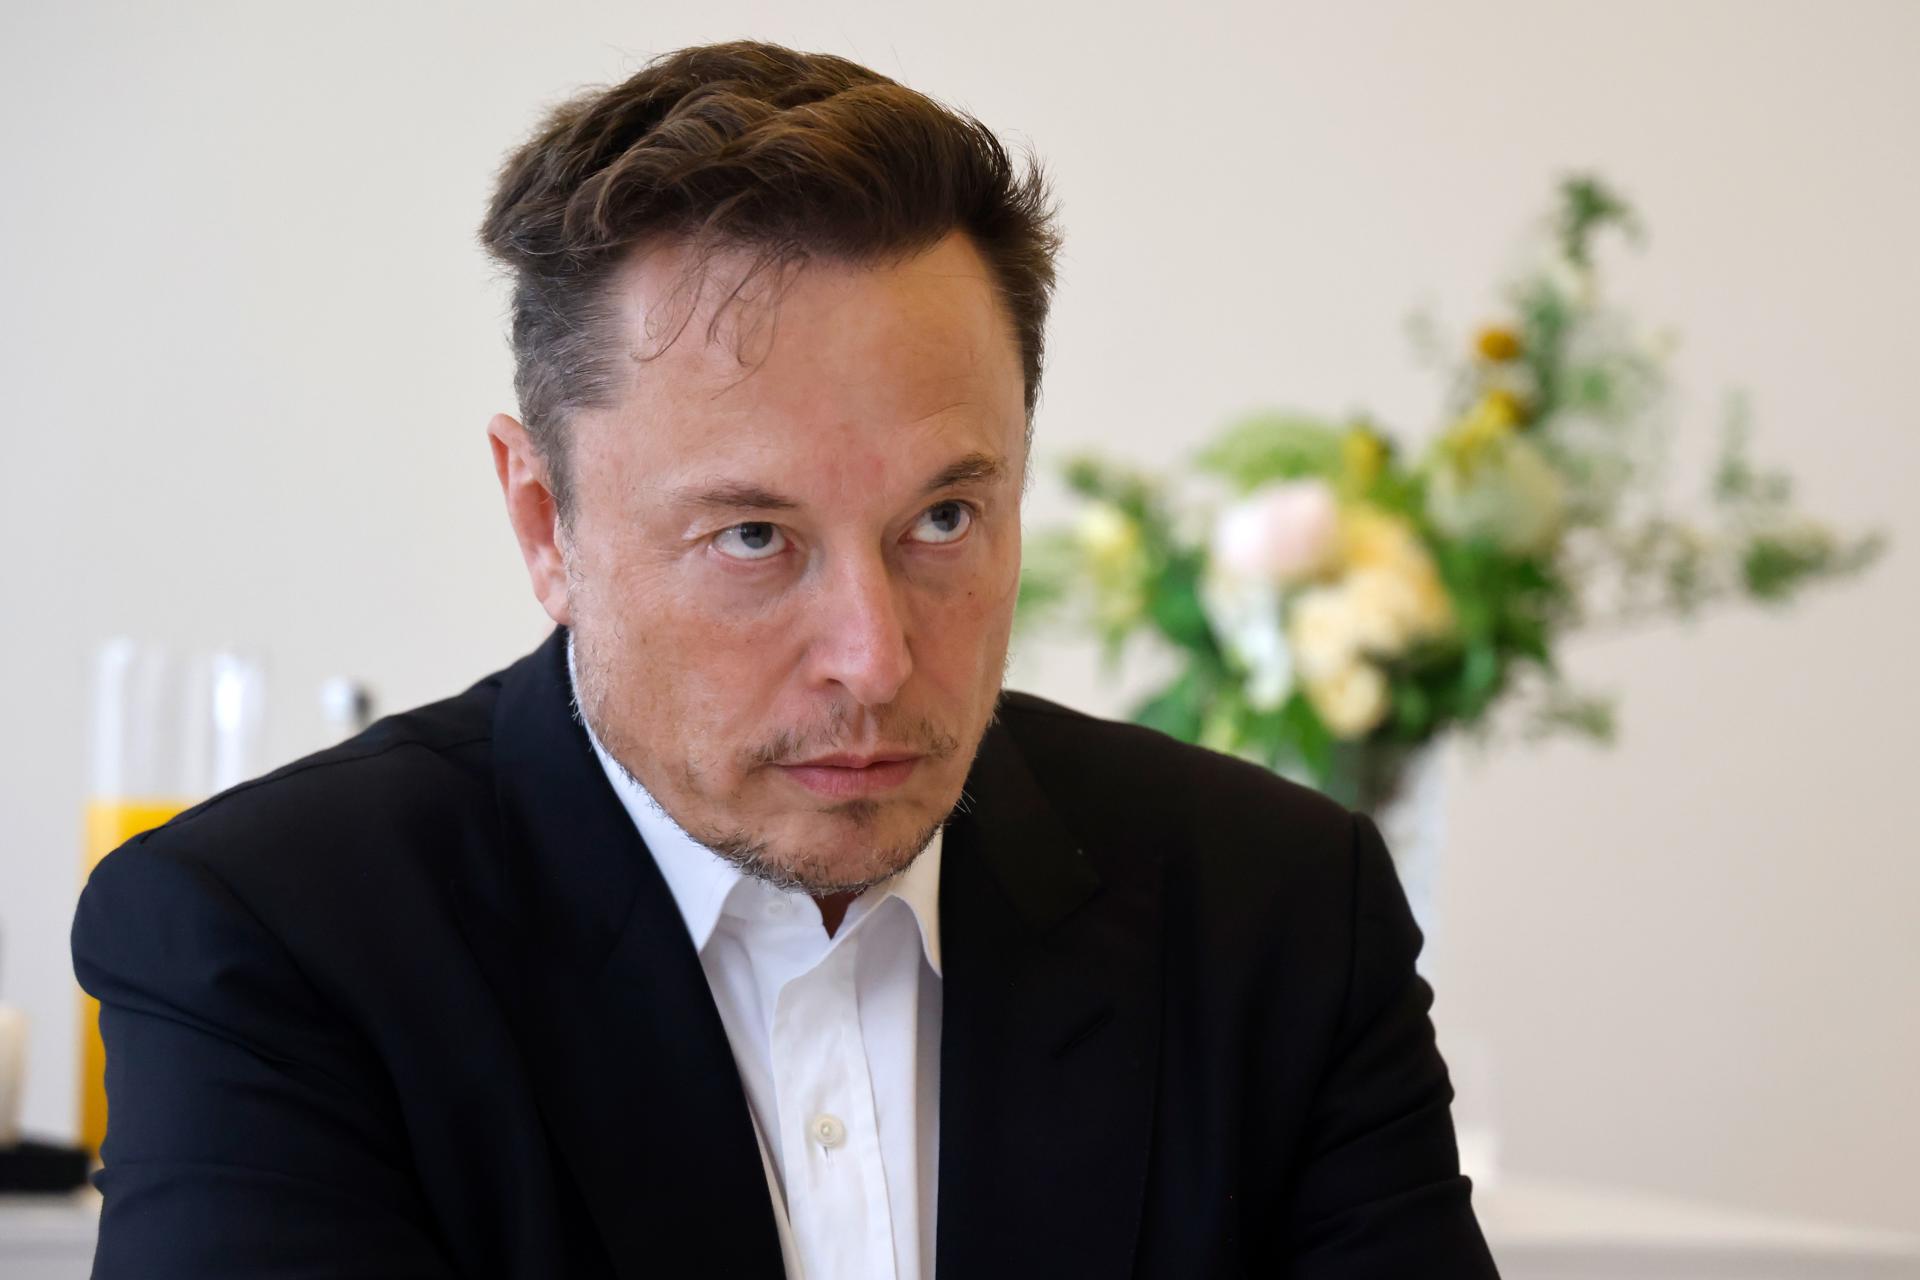 El magnate Elon Musk, en una fotografía de archivo. EFE/EPA/Ludovic Marin